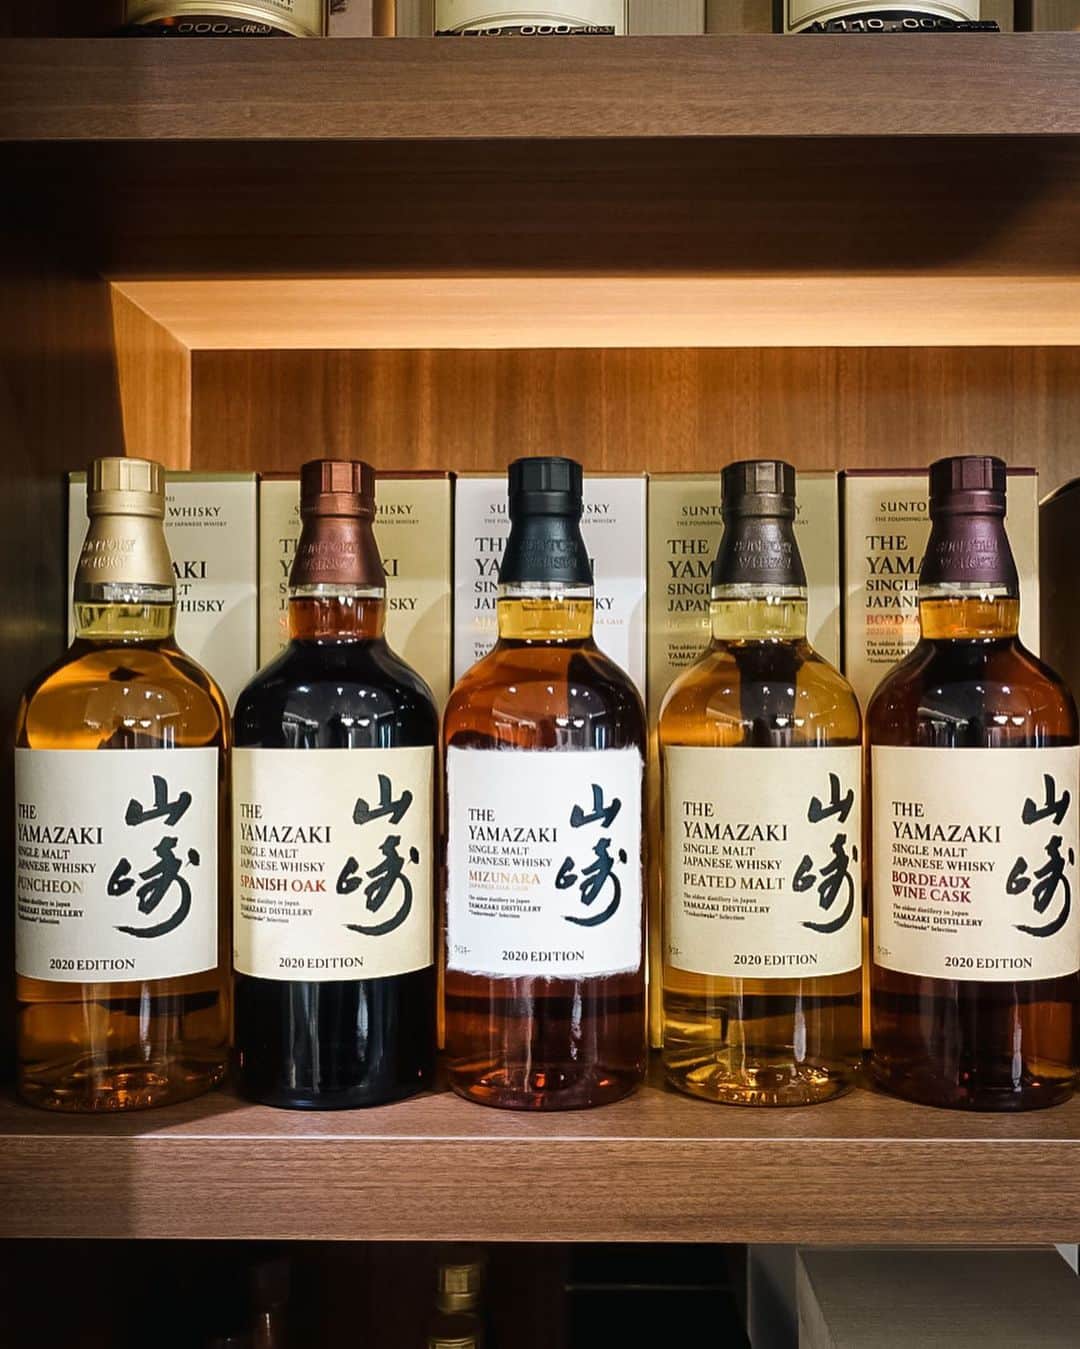 #ぶらエディターズ GINZA SIX オフィシャルさんのインスタグラム写真 - (#ぶらエディターズ GINZA SIX オフィシャルInstagram)「J.W.C LIBRARY B2F   この春、GINZA SIXでは世界が注目するジャパニーズウイスキーがますます充実✨！ 日本を中心に300種類以上のウイスキーを取り揃えた人気ショップJule’s Whisky Collection（ジュールズ ウイスキー コレクション） @jwcginza6 の隣に、姉妹店となるJ.W.C LIBRARY（ジェイ.ダブリュ.シー ライブラリー）が、3/17（金）にオープンしました🎉   新店舗のジェイ.ダブリュ.シー ライブラリーで扱うウイスキーはおよそ100種類で、両店を合わせると品揃えはおよそ400種類に拡充👏🏻😳ボトルの購入に加えて試飲（📸1枚目）までできる、ジャパニーズウイスキーのファンにはたまらない環境がGINZA SIXに整いました🥳🎵   店頭にはサントリーやニッカウヰスキーなど大手メーカーのウイスキーのほか、イチローズモルトや厚岸など、今、日本全国に増えている地ウイスキーと呼ばれる小規模生産のウイスキーも数多く並びます🥃✨   ジェイ.ダブリュ.シー ライブラリーでは、“ライブラリー”を名乗る店名が象徴するように、貴重なウイスキーが収められているのは書架のような味わい深いショーケース（📹2枚目）。だからこそショッピングだけでなく、博物館にでも来た気分で限定ボトルの秀逸なデザインを鑑賞したり、知らなかった銘柄について知ることができるなど、ウイスキーについて豊かな体験ができるショップになっています💯🙌🏻   例えば、山崎蒸留所で生み出される5種類の多彩な原酒をボトリングした山崎 2020EDITION 5本セット（📸3枚目・税込1,600,000円）や、余市のヴィンテージを蒸留年別に揃えた余市蒸留所20年貯蔵1984-1990 7本セット（📸4枚目・税込16,000,000円）など、ほかではなかなかお目にかからないコレクターズアイテムも揃います☺️   また、陶器製のボトルは特に海外の人から人気で、山崎の有田焼染付宝尽し福文柑子口瓶と白州の有田焼赤絵蛸唐草寿文柑子口瓶のセット（📸5枚目・税込880,000円）をはじめ、ユニークなボトルが並びます👍🏻   店頭でさまざまなウイスキーを眺めているうちに、さらに好きになったり、興味を持ったりしたら、ぜひトライしてほしいのが試飲です！ 店舗スペースは、ジュールズ ウイスキー コレクションの約43㎡に対して、ジェイ.ダブリュ.シー ライブラリーは約60㎡。店舗が広い分、ゆとりある試飲スペースが用意されているのです🎶最大10席のカウンター席（📸6枚目）に加えて、ウイスキー造りで使った樽を再利用した立ち飲みスペース（📸7枚目）も設置。レギュラーメニュー50種類と、銘柄が変動する特別メニュー20種類を楽しめるようになりました🥃😋   試飲の価格は15mlが税込500円〜、30mlが税込1000円〜。一番人気は山崎12年（📸8枚目・15ml 税込800円）で、価格と味のバランスが良く、ジャパニーズウイスキービギナーにもオススメです。山崎シェリーカスク（特別メニュー15ml 税込25,000円）や、響30年（レギュラーメニュー15ml 税込32,000円）のような貴重なウイスキーも試飲メニューにラインナップ！ 発売時に手に入らなかったけどどんな味なのか知りたいという方や、自宅で年代もののウイスキーを保管しているけど、もったいなくて自分のボトルは開けられないから、ここで飲みたいといった方にも人気です🌟   実は販売されているお酒はウイスキーだけではありません。十四代や森伊蔵など人気の日本酒や焼酎、さらにはナポレオンをはじめ著名なブランデーなど厳選されたお酒も用意されているので要チェック！🍶   ちなみに両店で最も高額なウイスキーは、2007年に50本限定で販売された山崎50年（📸9枚目）で、販売価格は税込88,000,000円💥🤯こちらは岩田なつみ店長（📸10枚目）がショップにいる時のみの販売になります🙇🏻‍♀️   「いろいろなボトルを見て、気になる銘柄を試飲することで、ウイスキーの奥深さに触れてもらえたら嬉しいです」そう話す岩田店長。やわらかな味わいに代表されるジャパニーズウイスキーの魅力を思う存分堪能できるショップが、ジェイ.ダブリュ.シー ライブラリーなのです😌✨   ―― B2F ☎03-6263-9968 ――   #jwc #jwclibrary #japanesewhisky #日本のウイスキー #whisky #ウイスキー #vintagewhisky #ヴィンテージウイスキー #地ウイスキー #suntorywhisky #nikkawhisky #山崎 #白州 #余市 #響 #イチローズモルト #厚岸 #十四代 #山崎50年 #森伊蔵 #ナポレオン #日本酒 #焼酎 #ブランデー #限定ボトル #ginzasix_food #ginza #銀座 #ginzasix #ギンザシックス  @ginzasix_official」3月30日 12時34分 - ginzasix_official